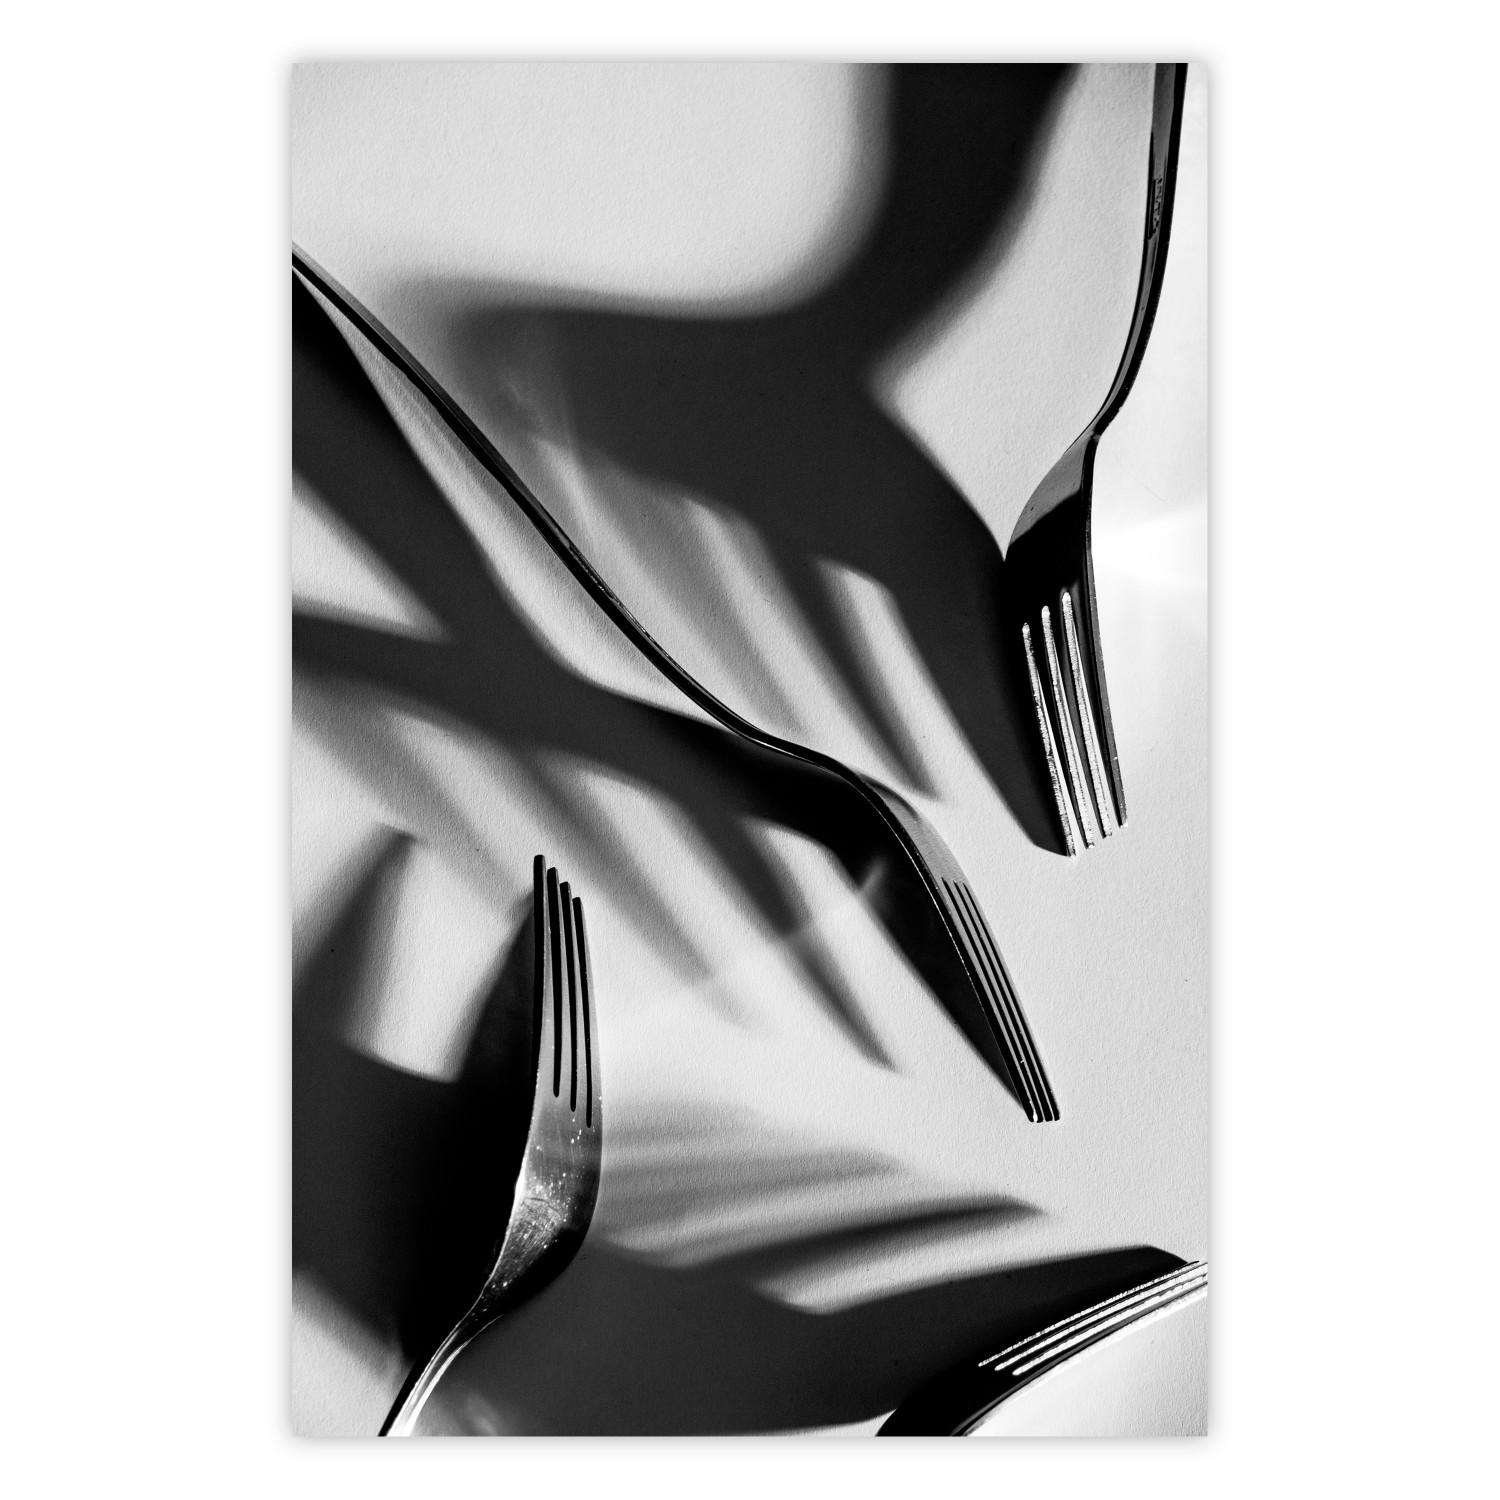 Cartel Cuatro tenedores: composición en blanco y negro con cubiertos retro